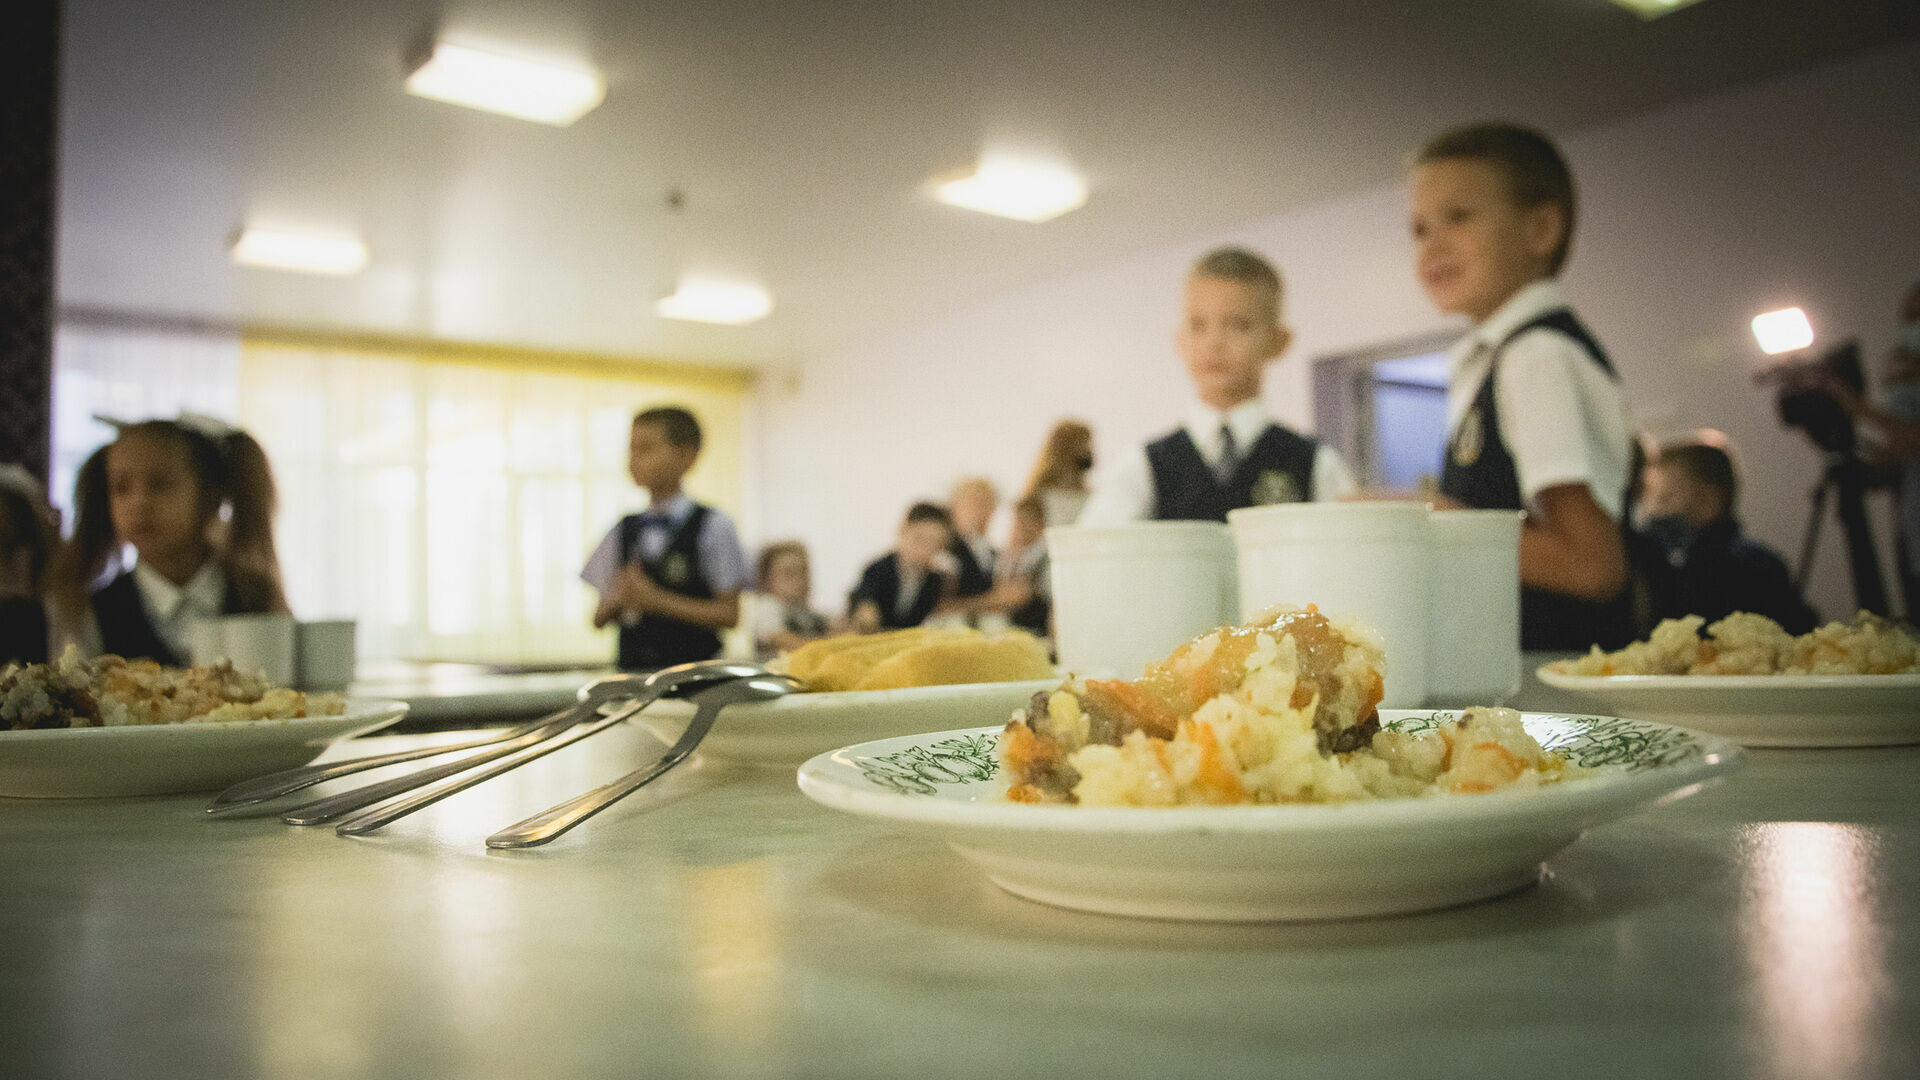 Проверку организовали после жалобы нижегородки на тухлую еду в школьной столовой